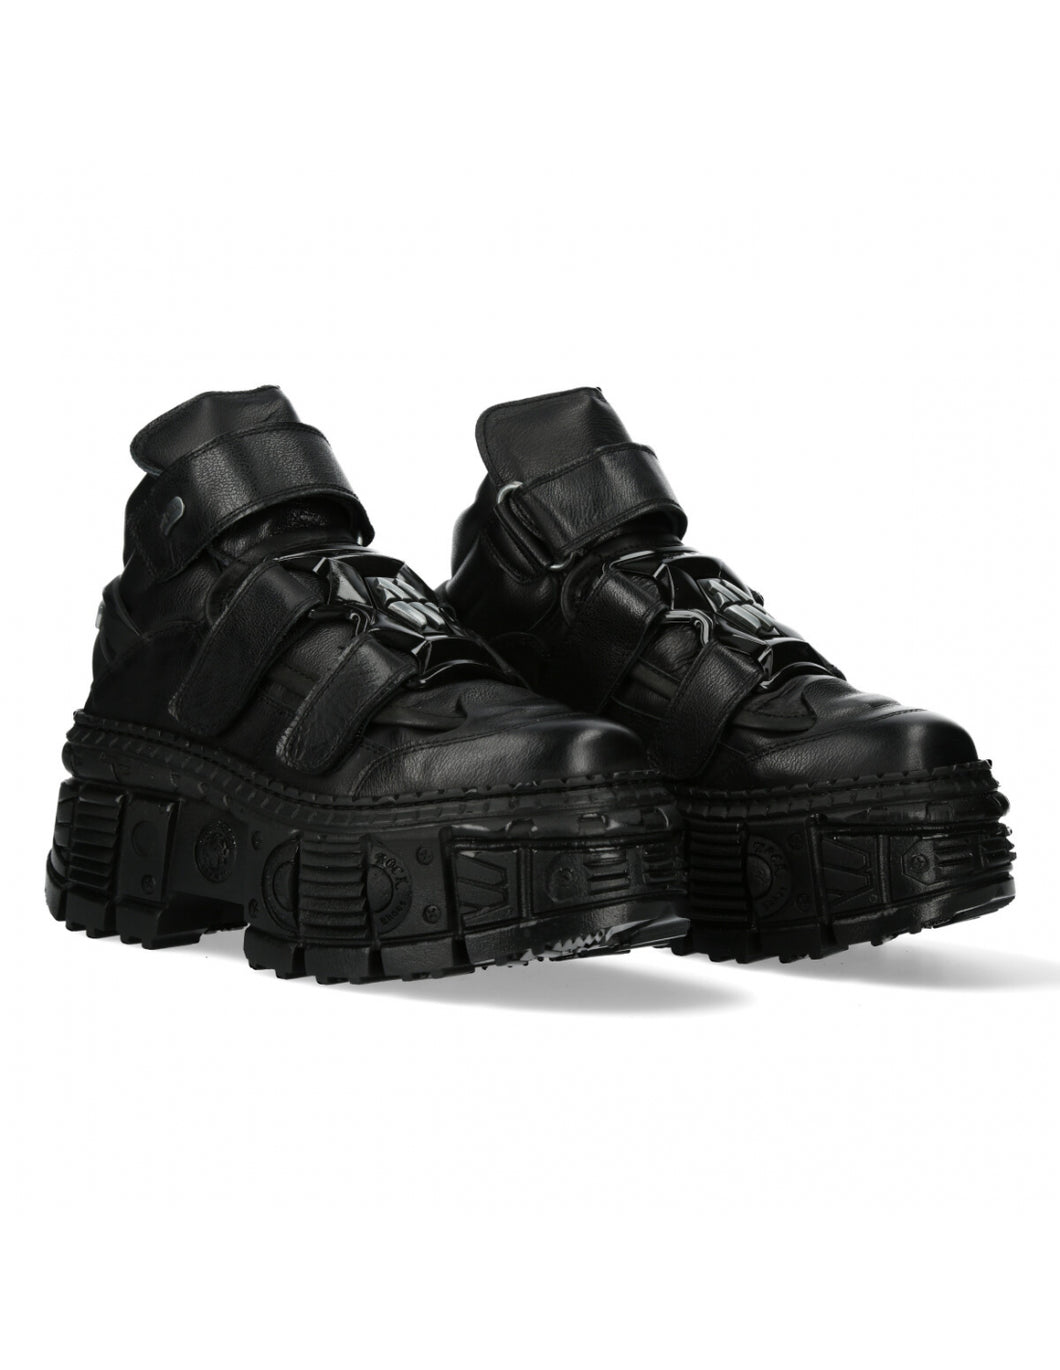 New Rock Schuhe Boots Designer Platform M-WALL285-S2